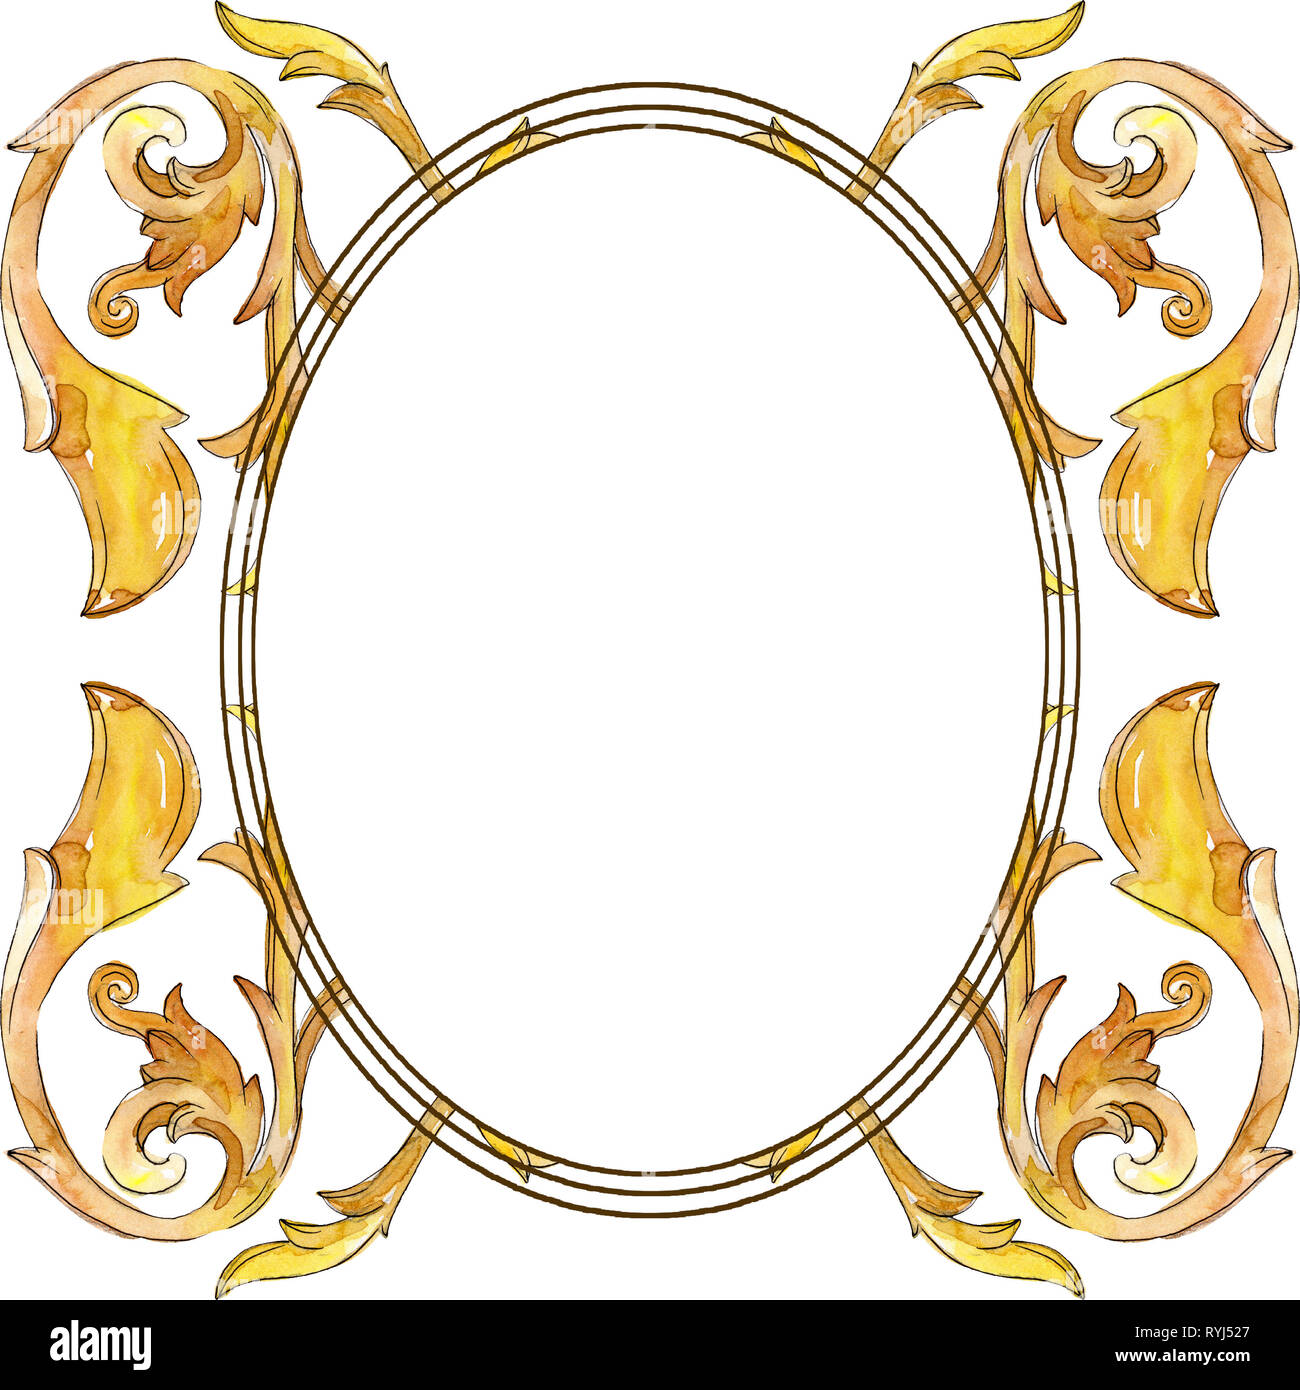 El monograma de oro ornamento floral. Ilustración de fondo de acuarela. Ornamento de borde de marco cuadrado. Foto de stock